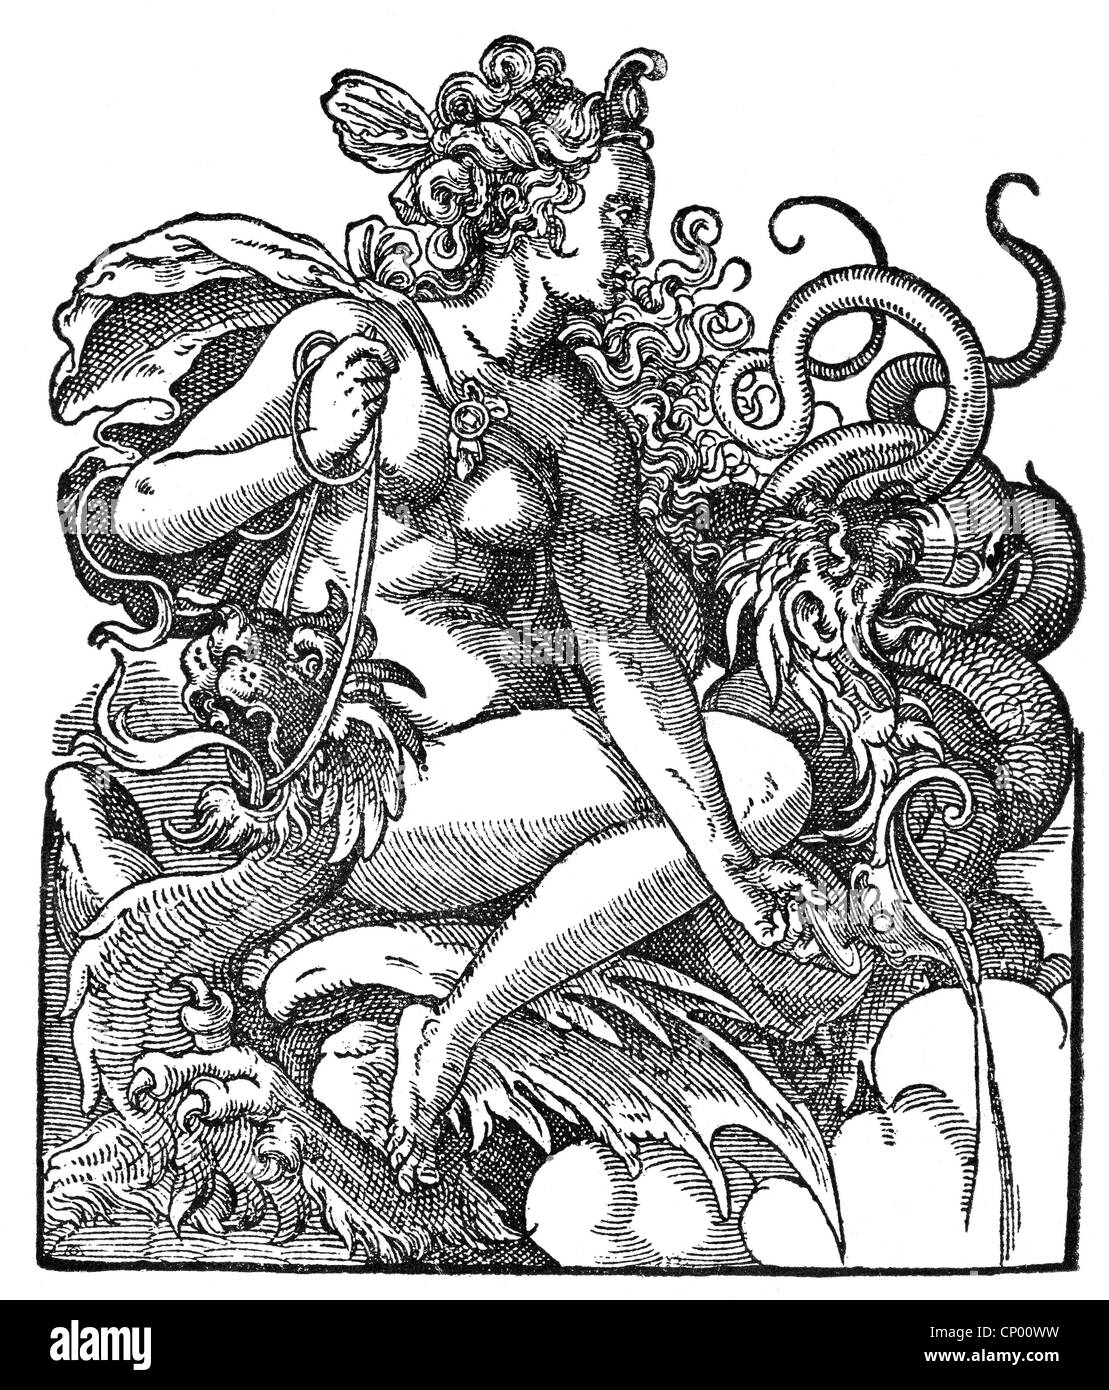 Médée, figure mythique grecque, épouse de Jason, école dragon, gravure sur cuivre, l'artiste n'a pas d'auteur pour être effacé Banque D'Images